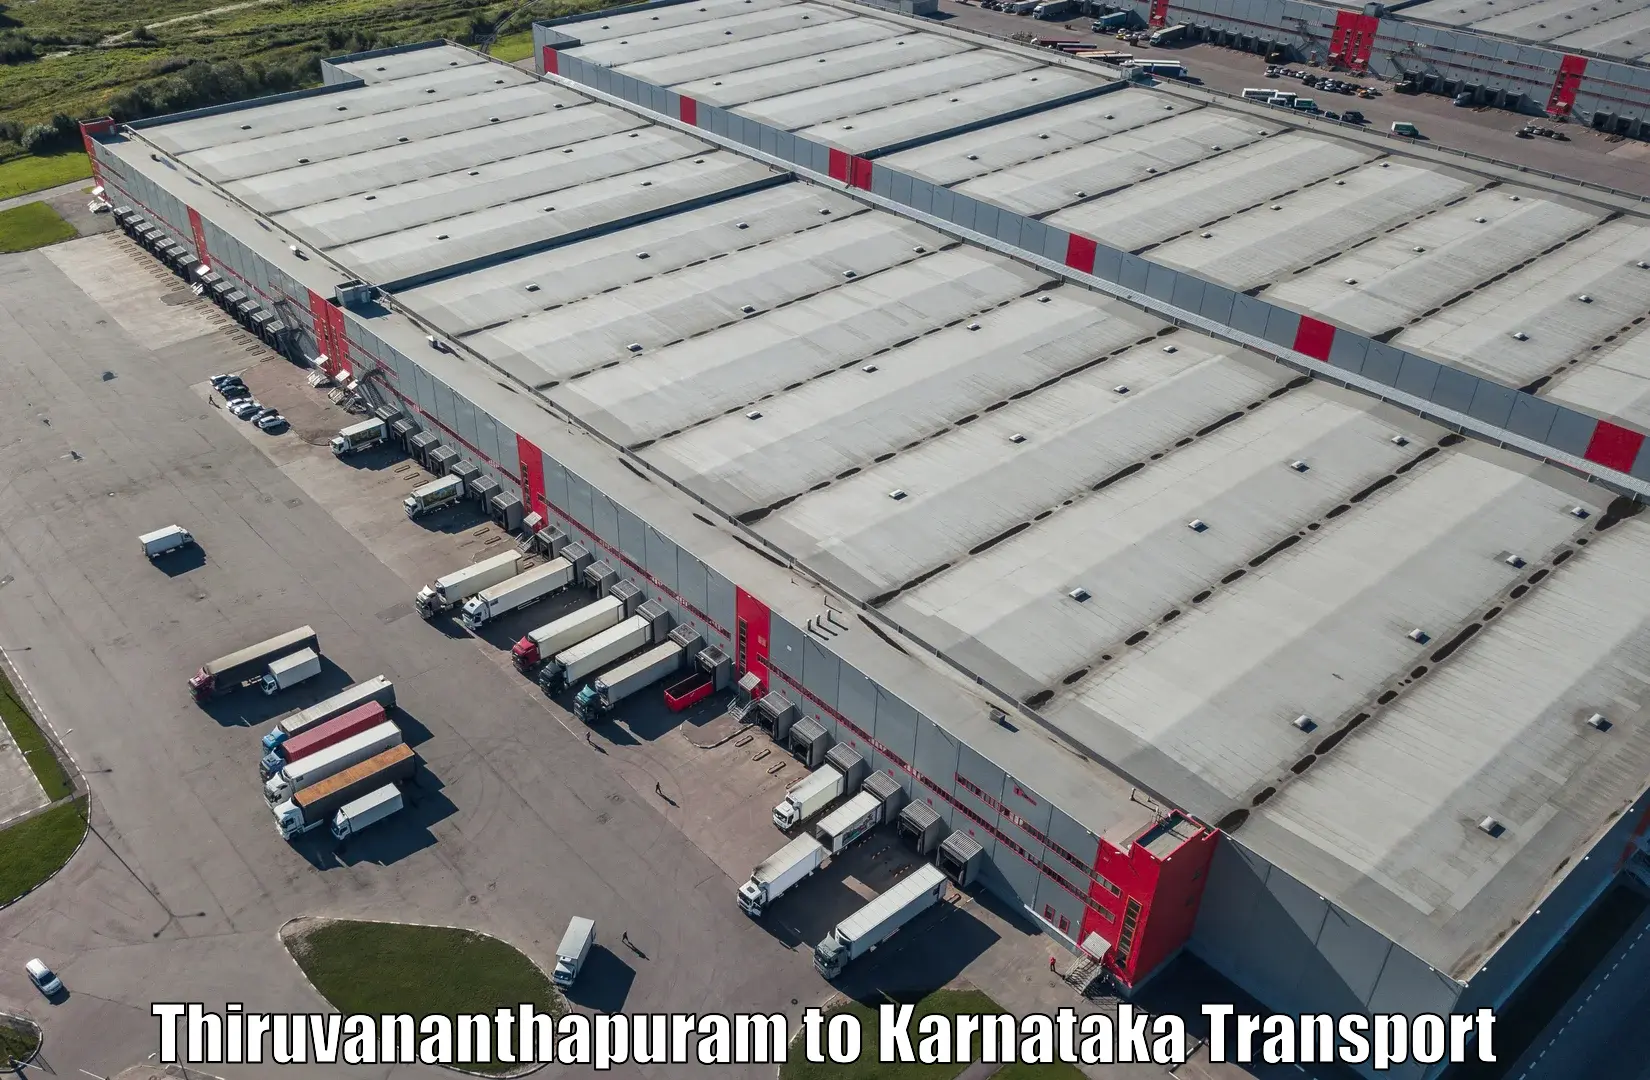 Daily transport service Thiruvananthapuram to Banavara